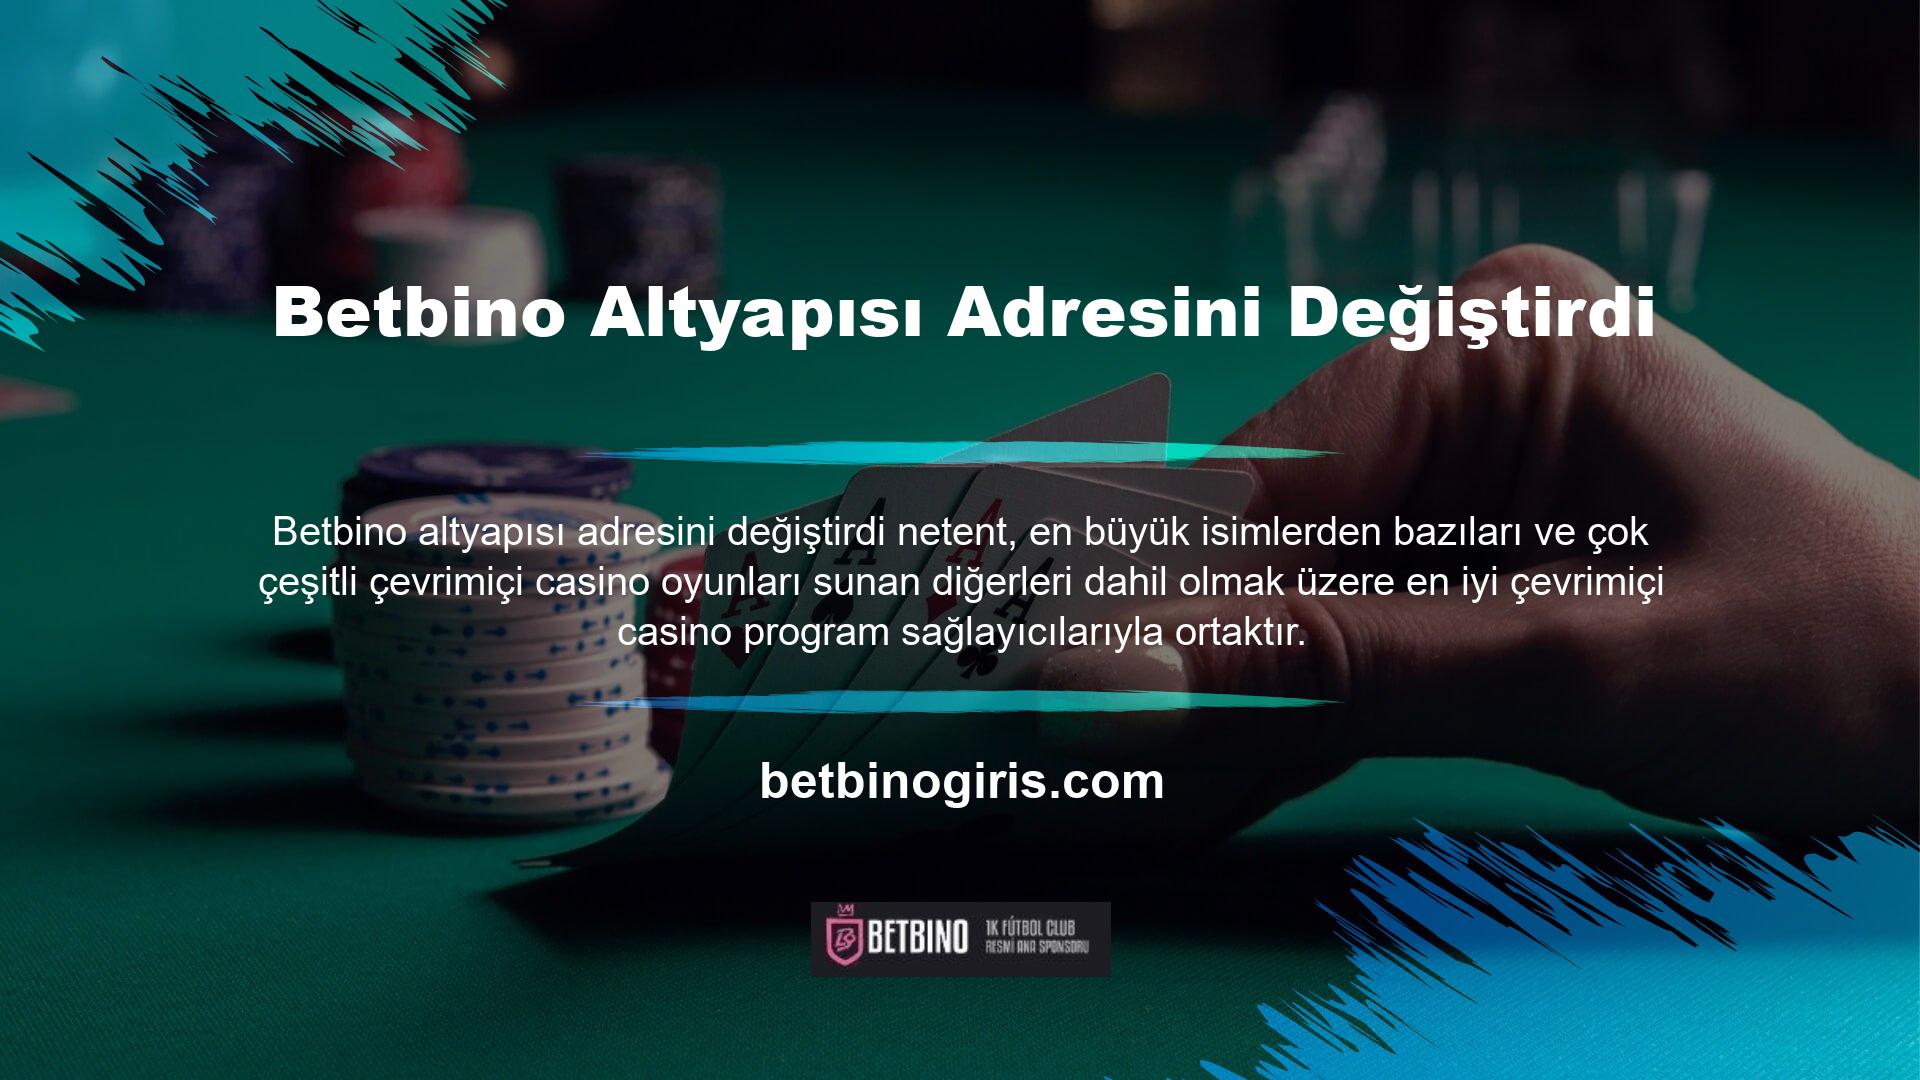 Casino içeriği, çevrimiçi casinoların ana unsurlarından biridir ve Betbino altyapısı adresini değiştirdi slot oyunları tartışmasız en ünlü casino programı türüdür